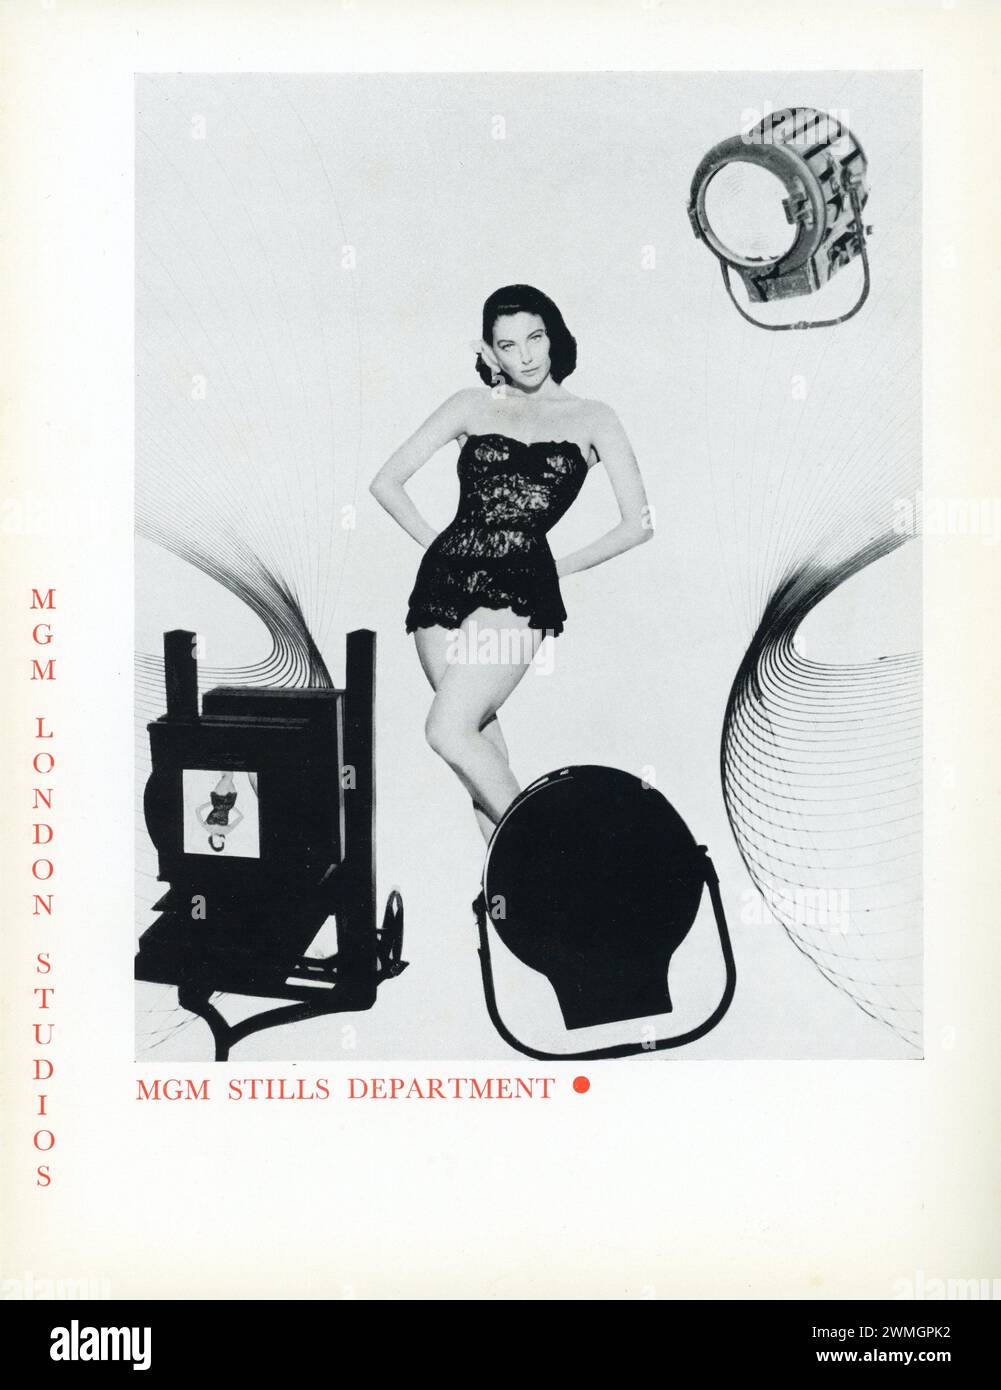 AVA GARDNER posierte für Werbung für THE LITTLE HUT (1957) im MGM Stills Department (mit DAVE BOULTON) von METRO GOLDWYN MAYER LONDON / BRITISH STUDIOS, Elstree Way, Boreham Wood, Herts Studio Brochure, produziert in der letzten Zeit 1959 Stockfoto